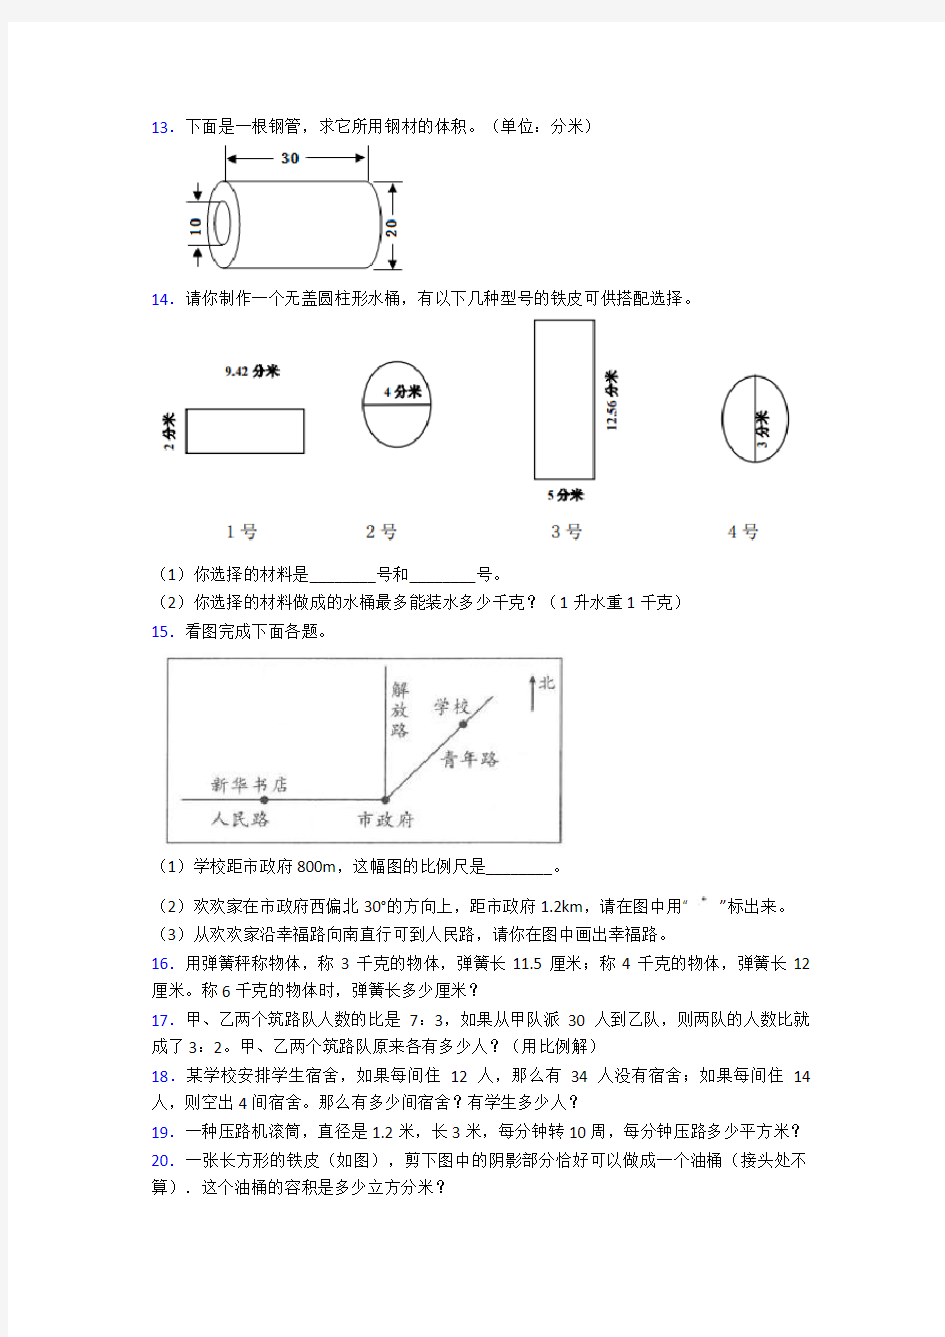 苏教版小学六年级数学下册期末复习应用题100道(全) 附答案解析